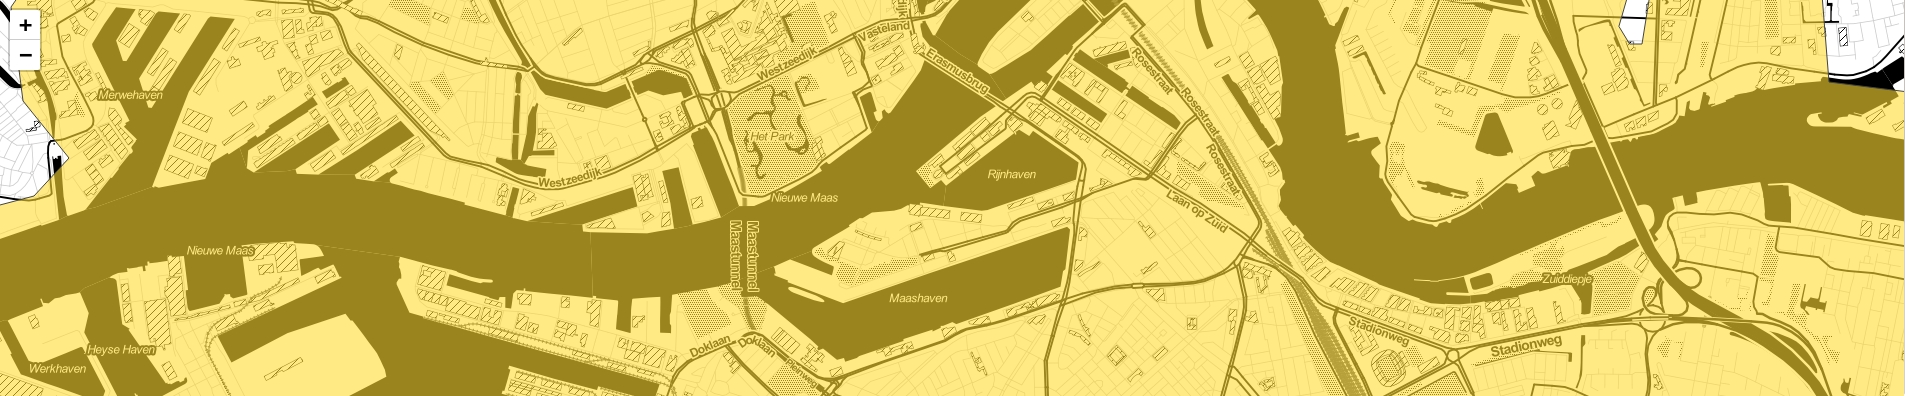 custom map Rotterdam yellow